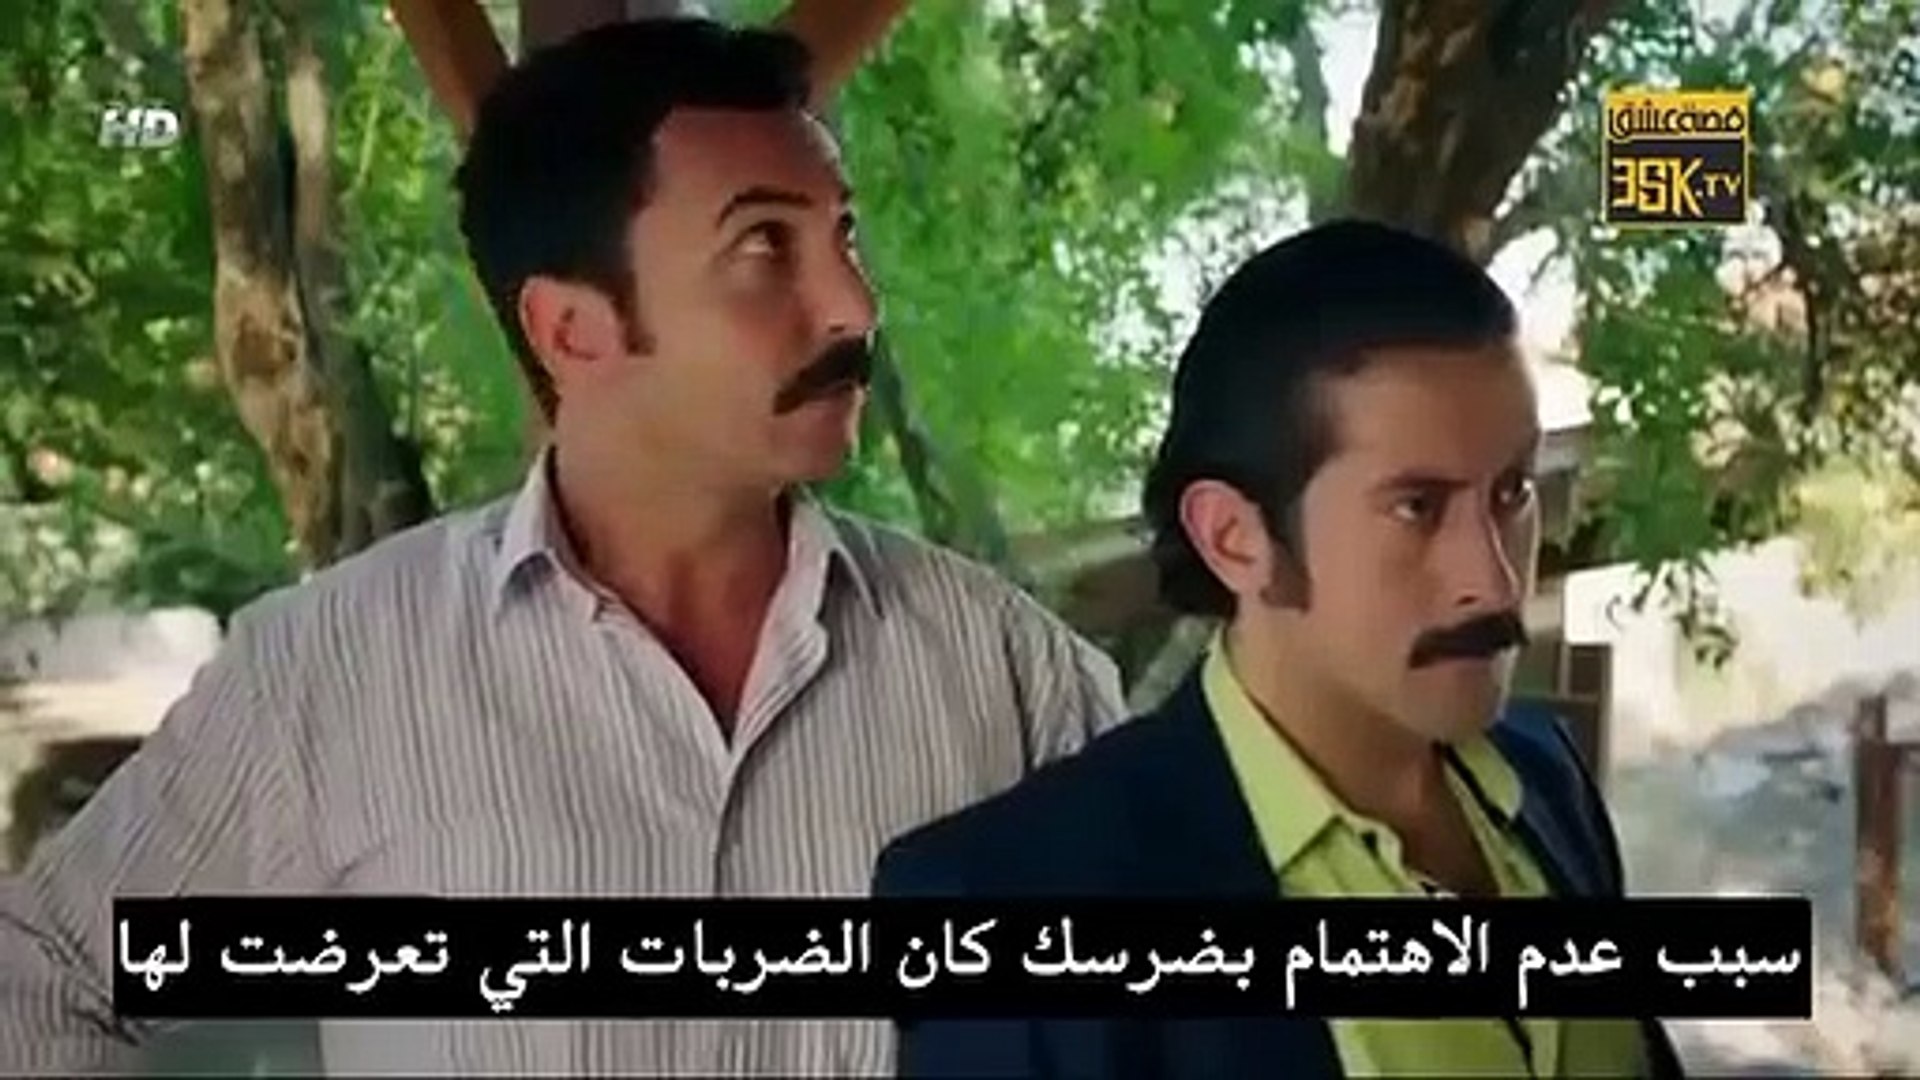 مسلسل Güzel köylü القروية الجميلة الحلقة 17 مترجمة للعربية - p2 - فيديو  Dailymotion